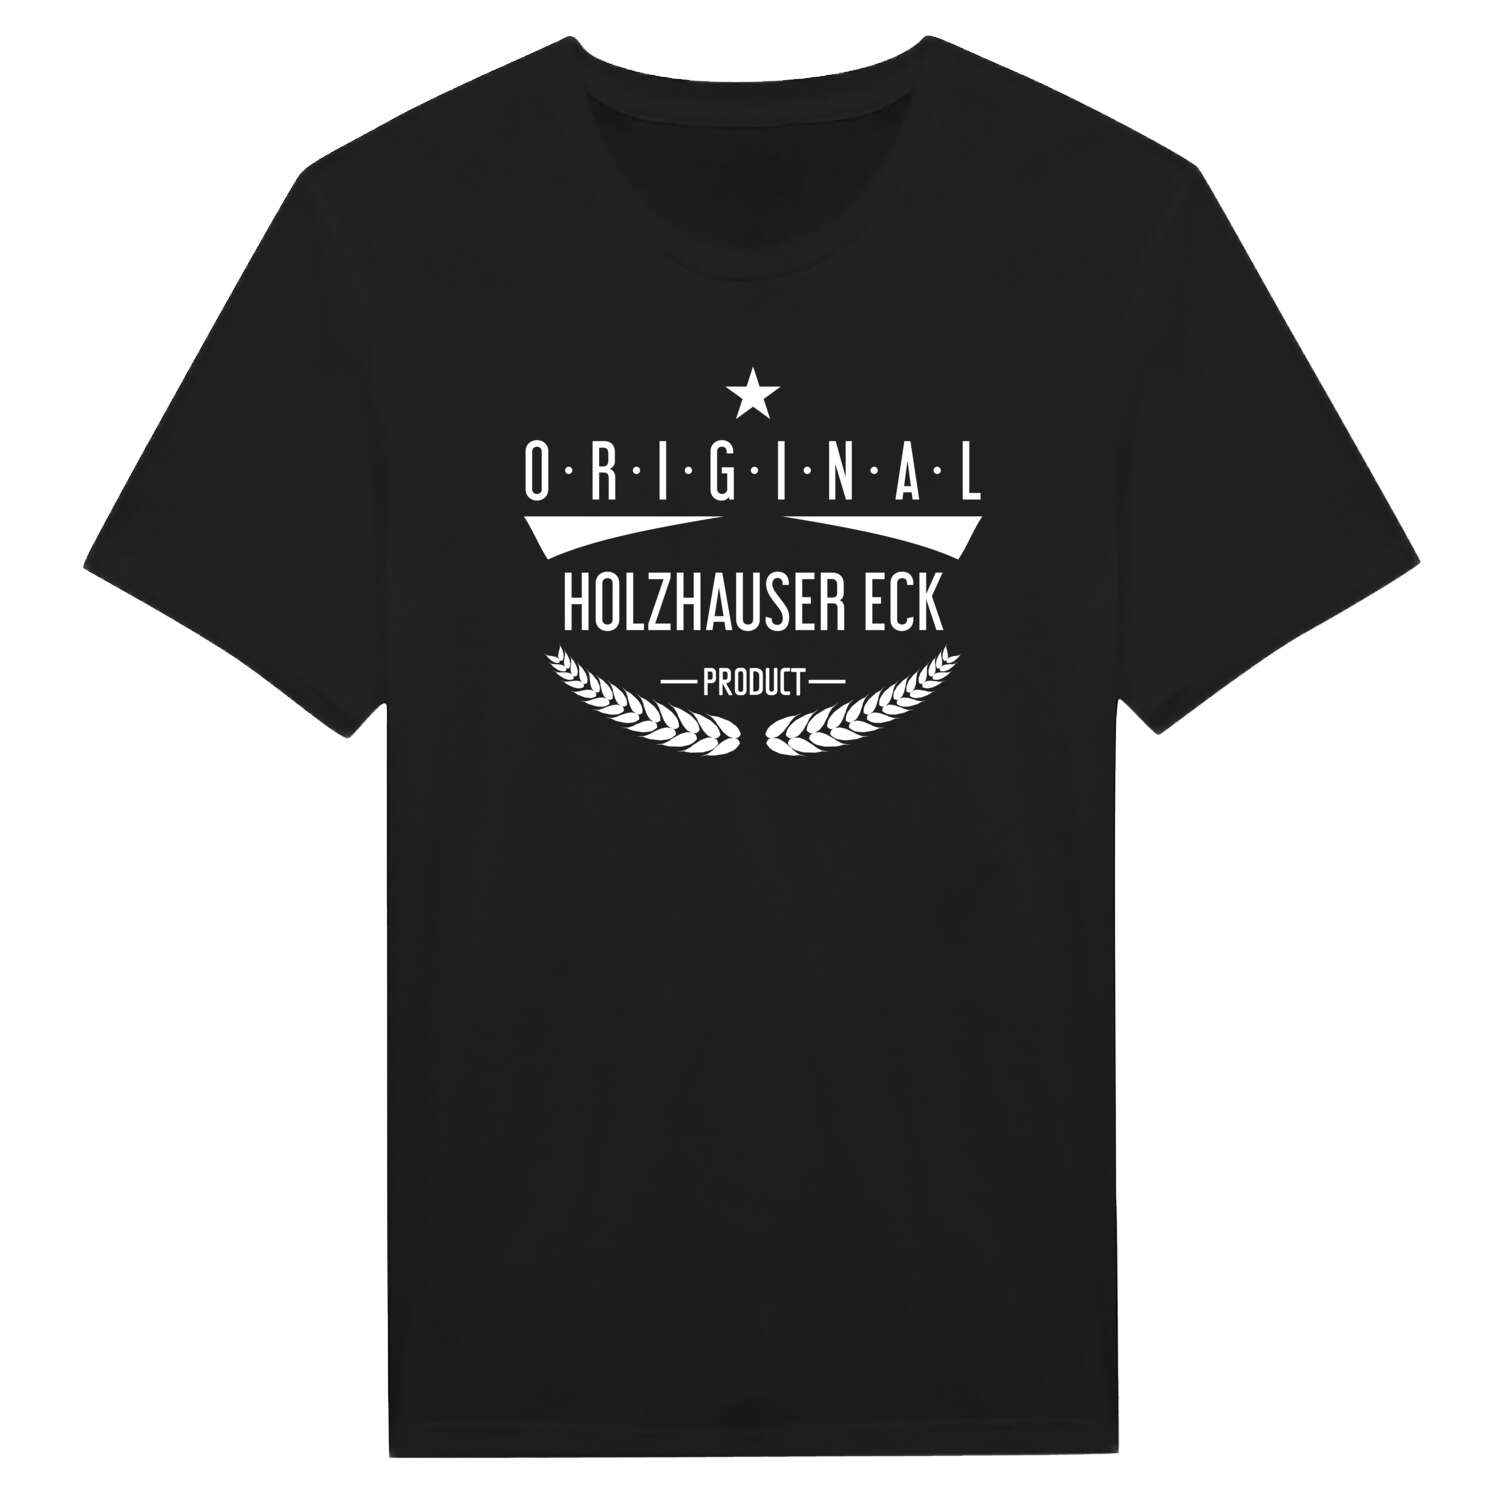 Holzhauser Eck T-Shirt »Original Product«